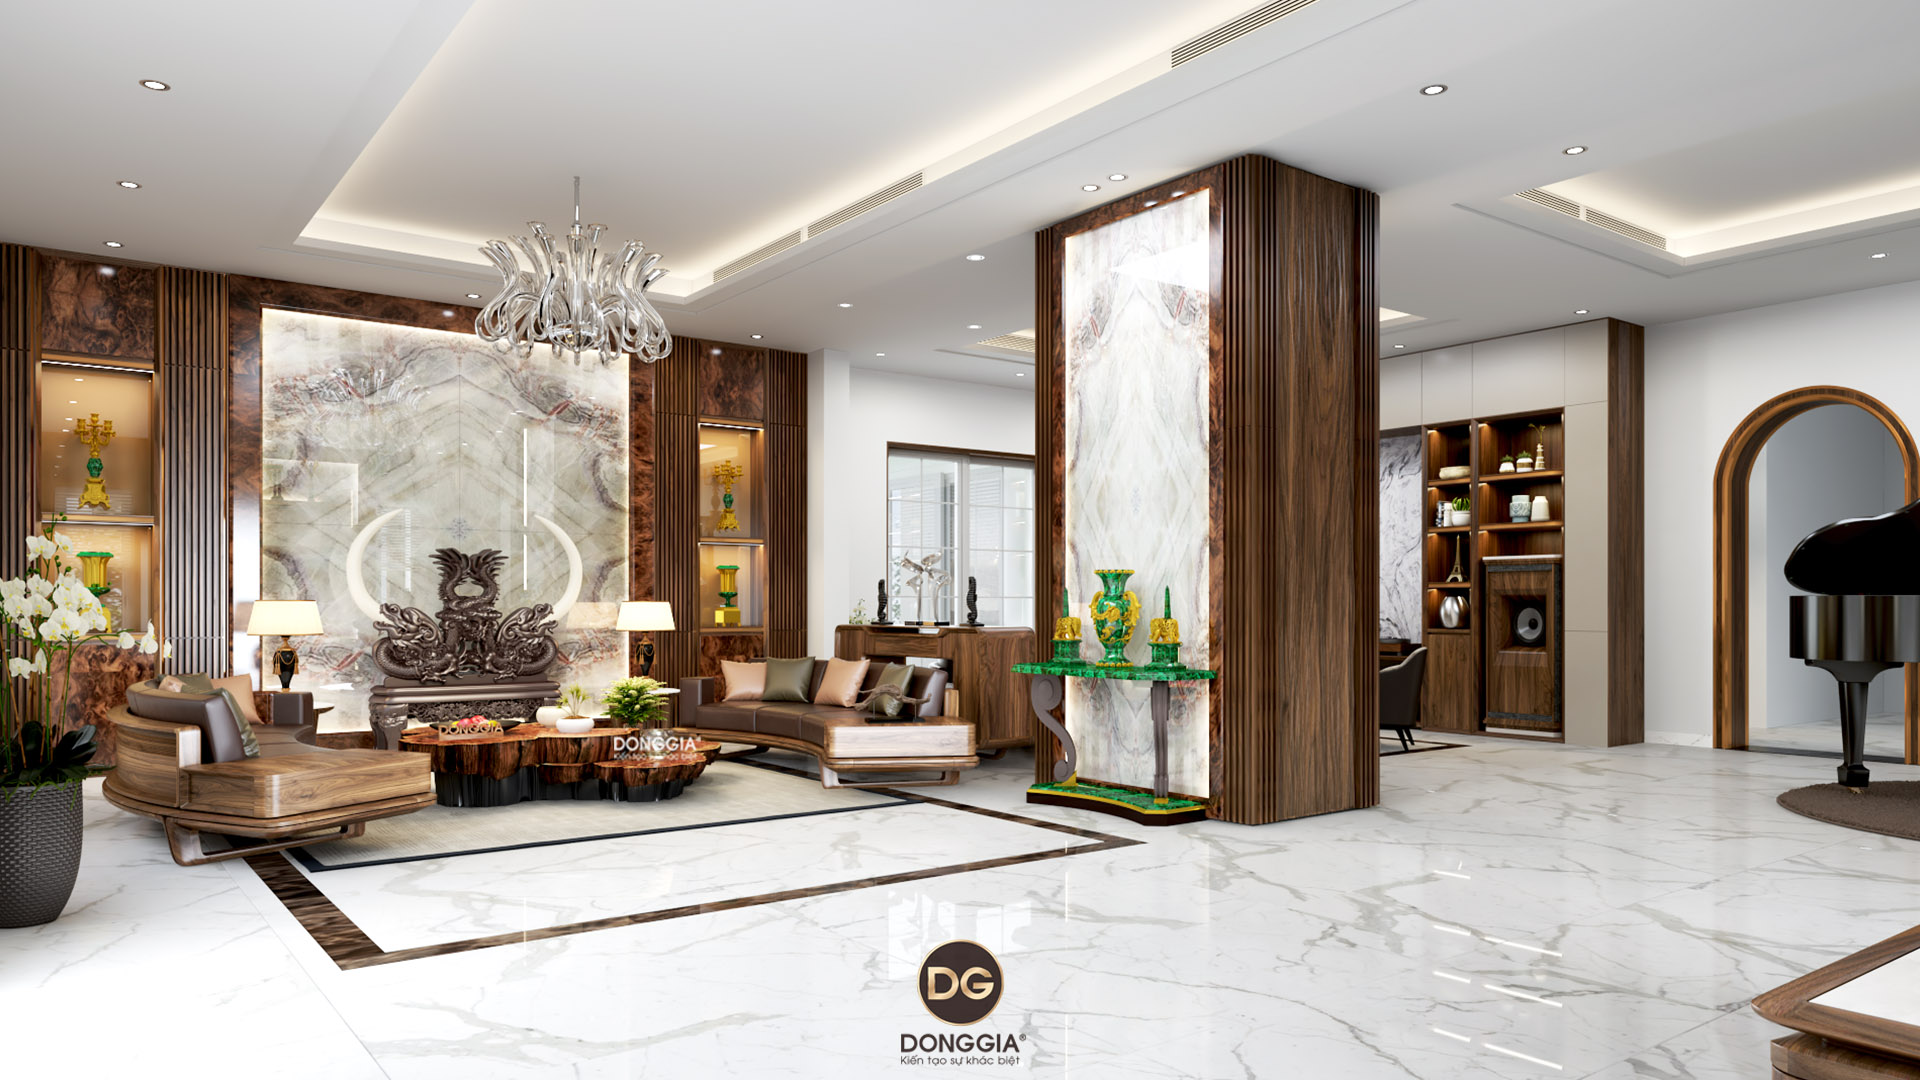 Năm 2024, thiết kế nội thất phòng khách đã đạt đến đỉnh cao về sự tinh tế và hài hòa. Bạn sẽ bị mê hoặc bởi sự kết hợp hoàn hảo giữa các tông màu và chất liệu tạo nên không gian sống đẳng cấp. Nhanh chóng xem hình ảnh để khám phá vẻ đẹp đang chờ đợi bạn!